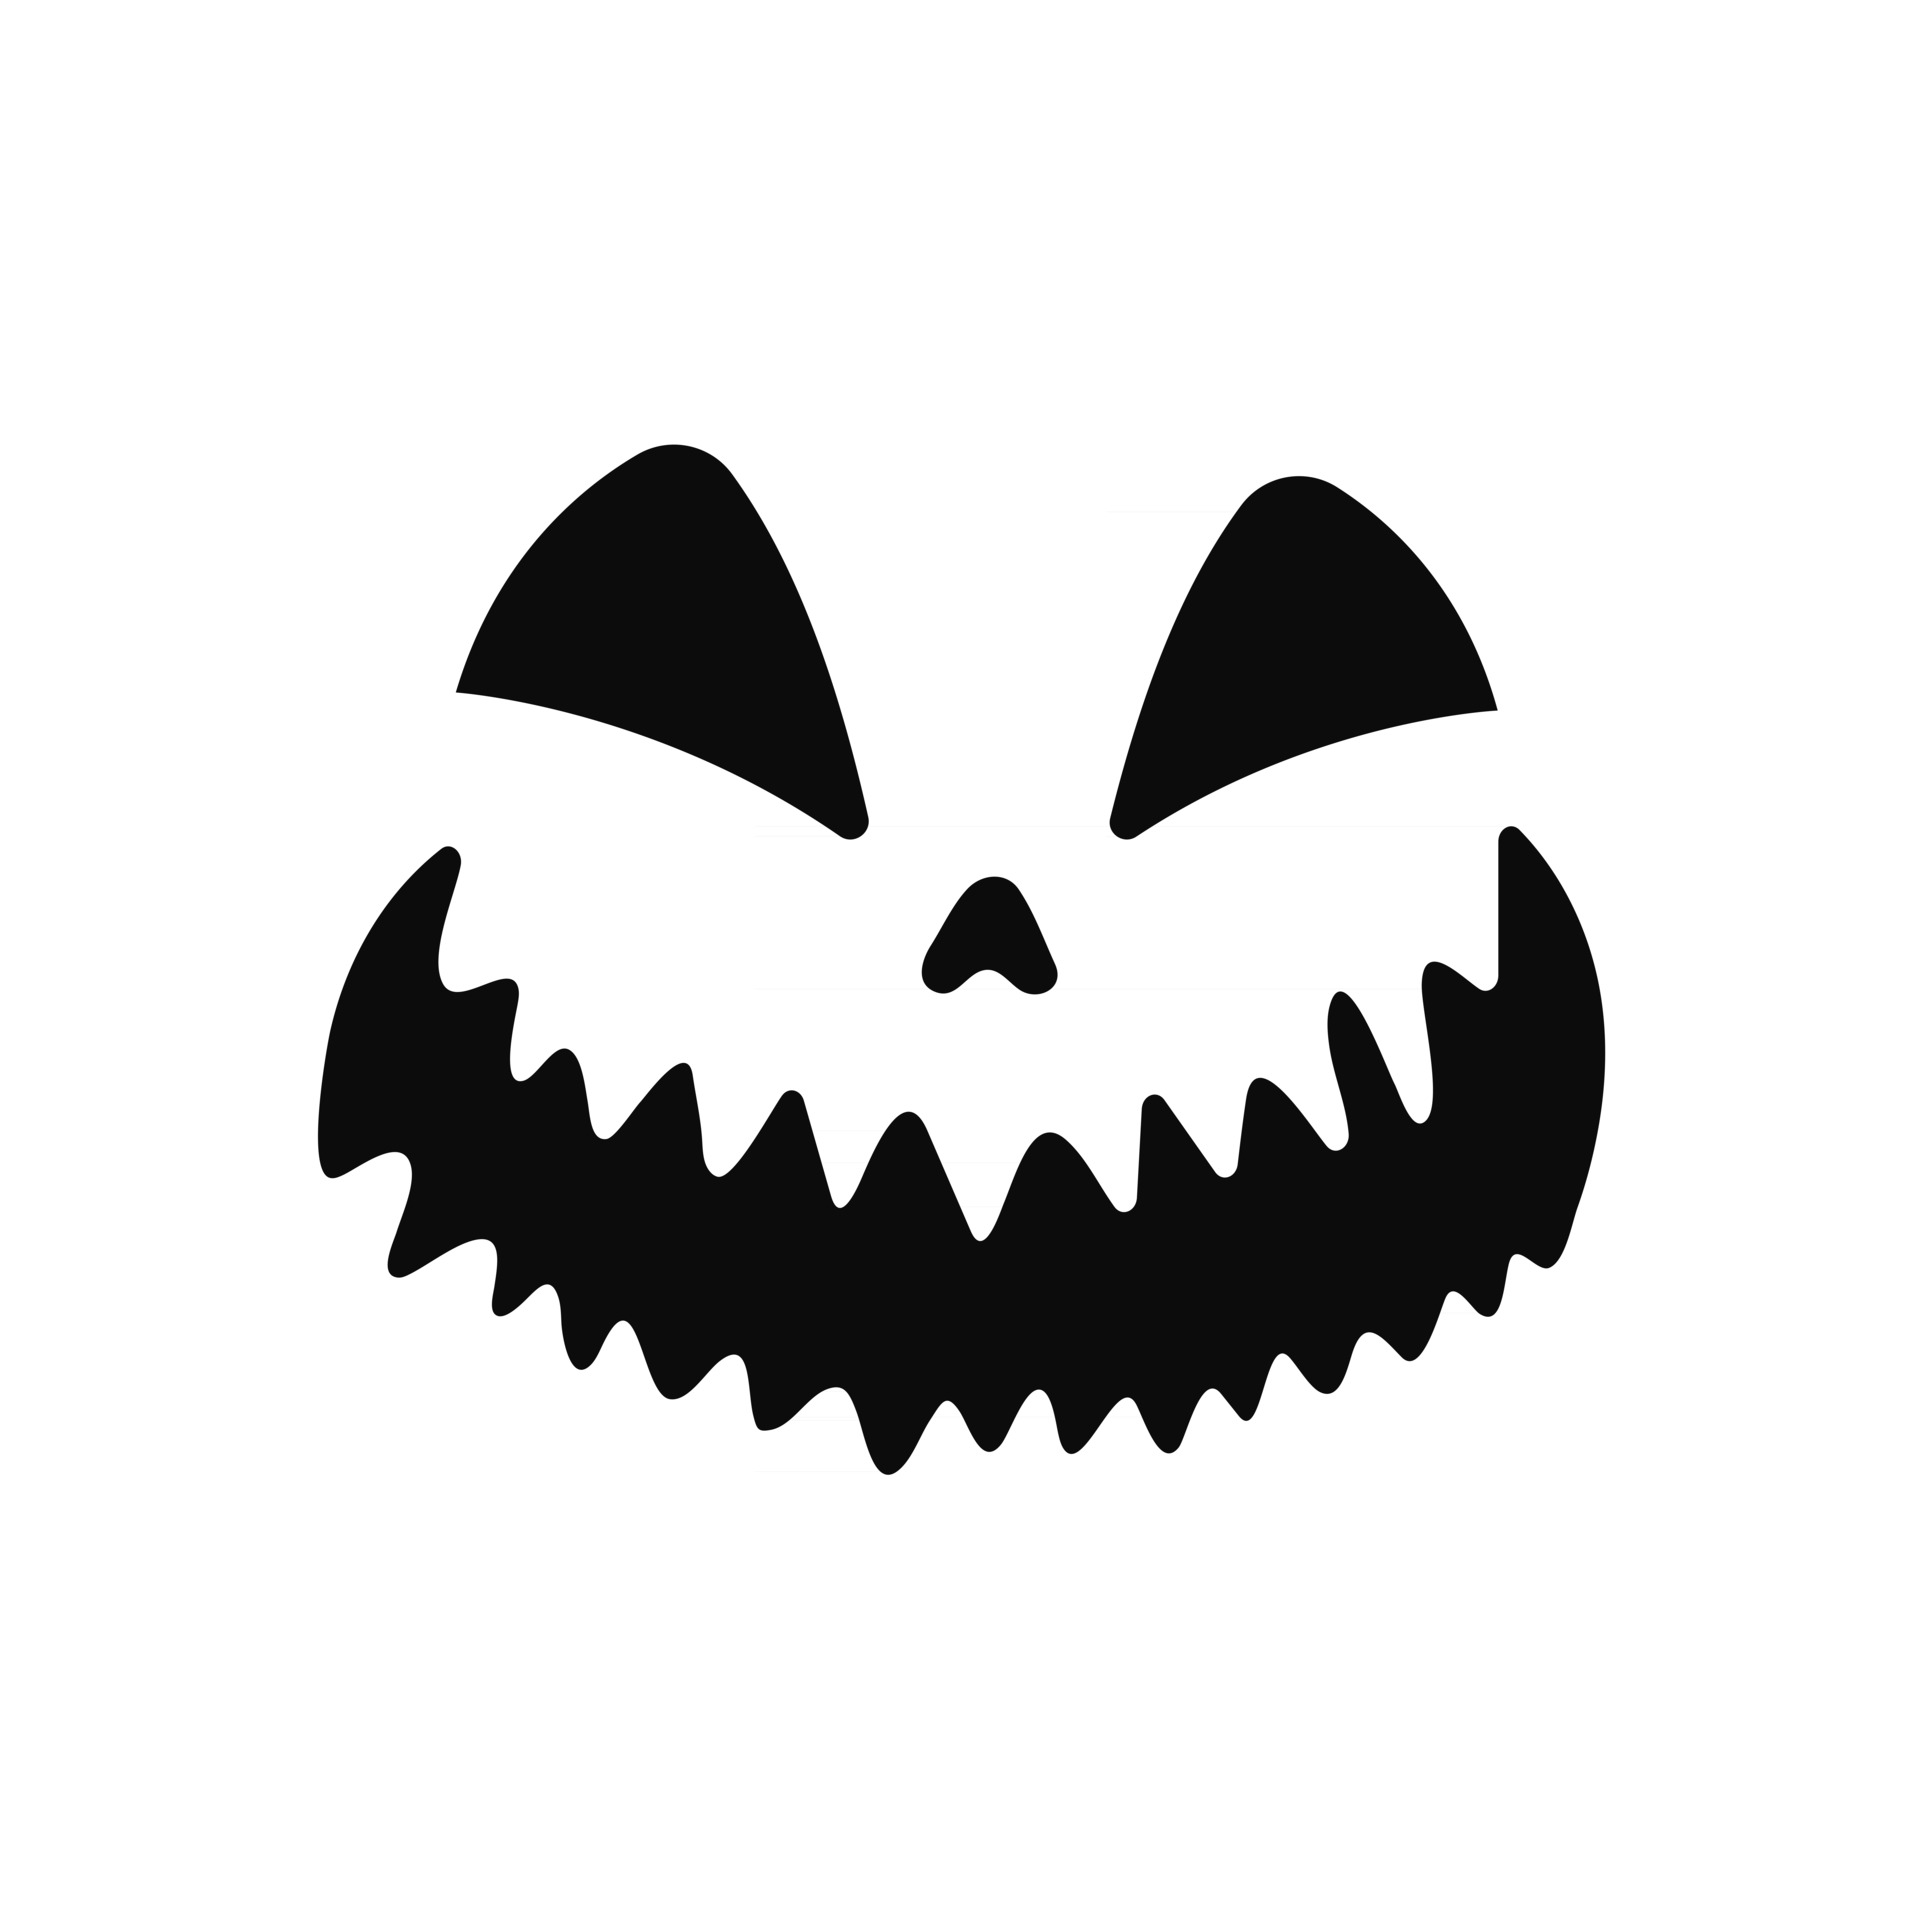 abóbora de rosto assustador de halloween ou fantasma 9330378 Vetor